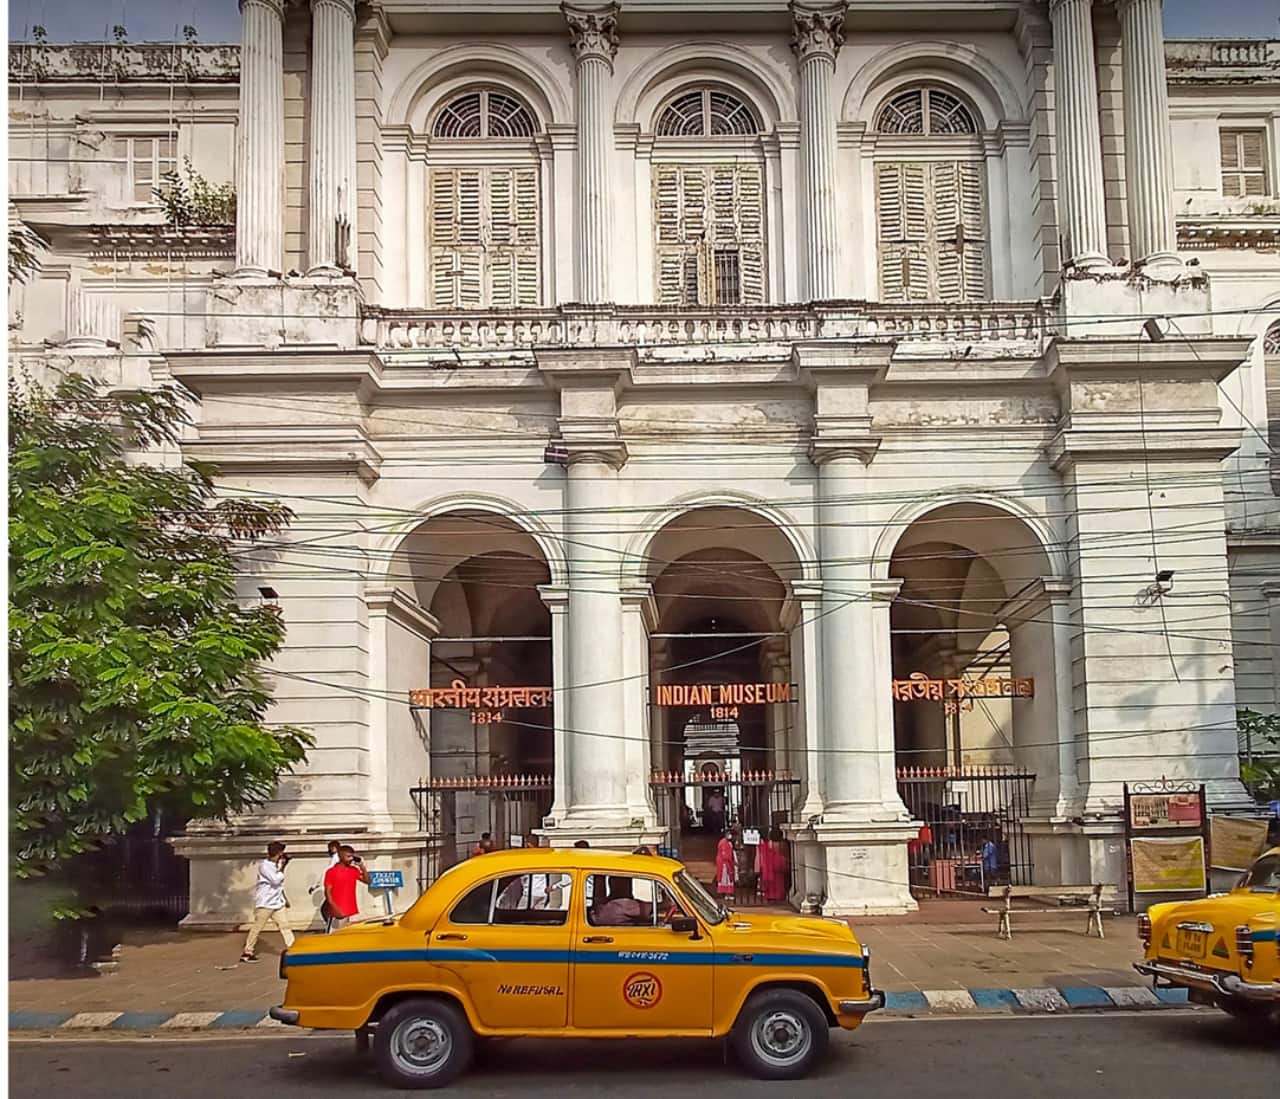 Indian Museum Kolkata is popular as Jadughar or Ajabghar among tourists.